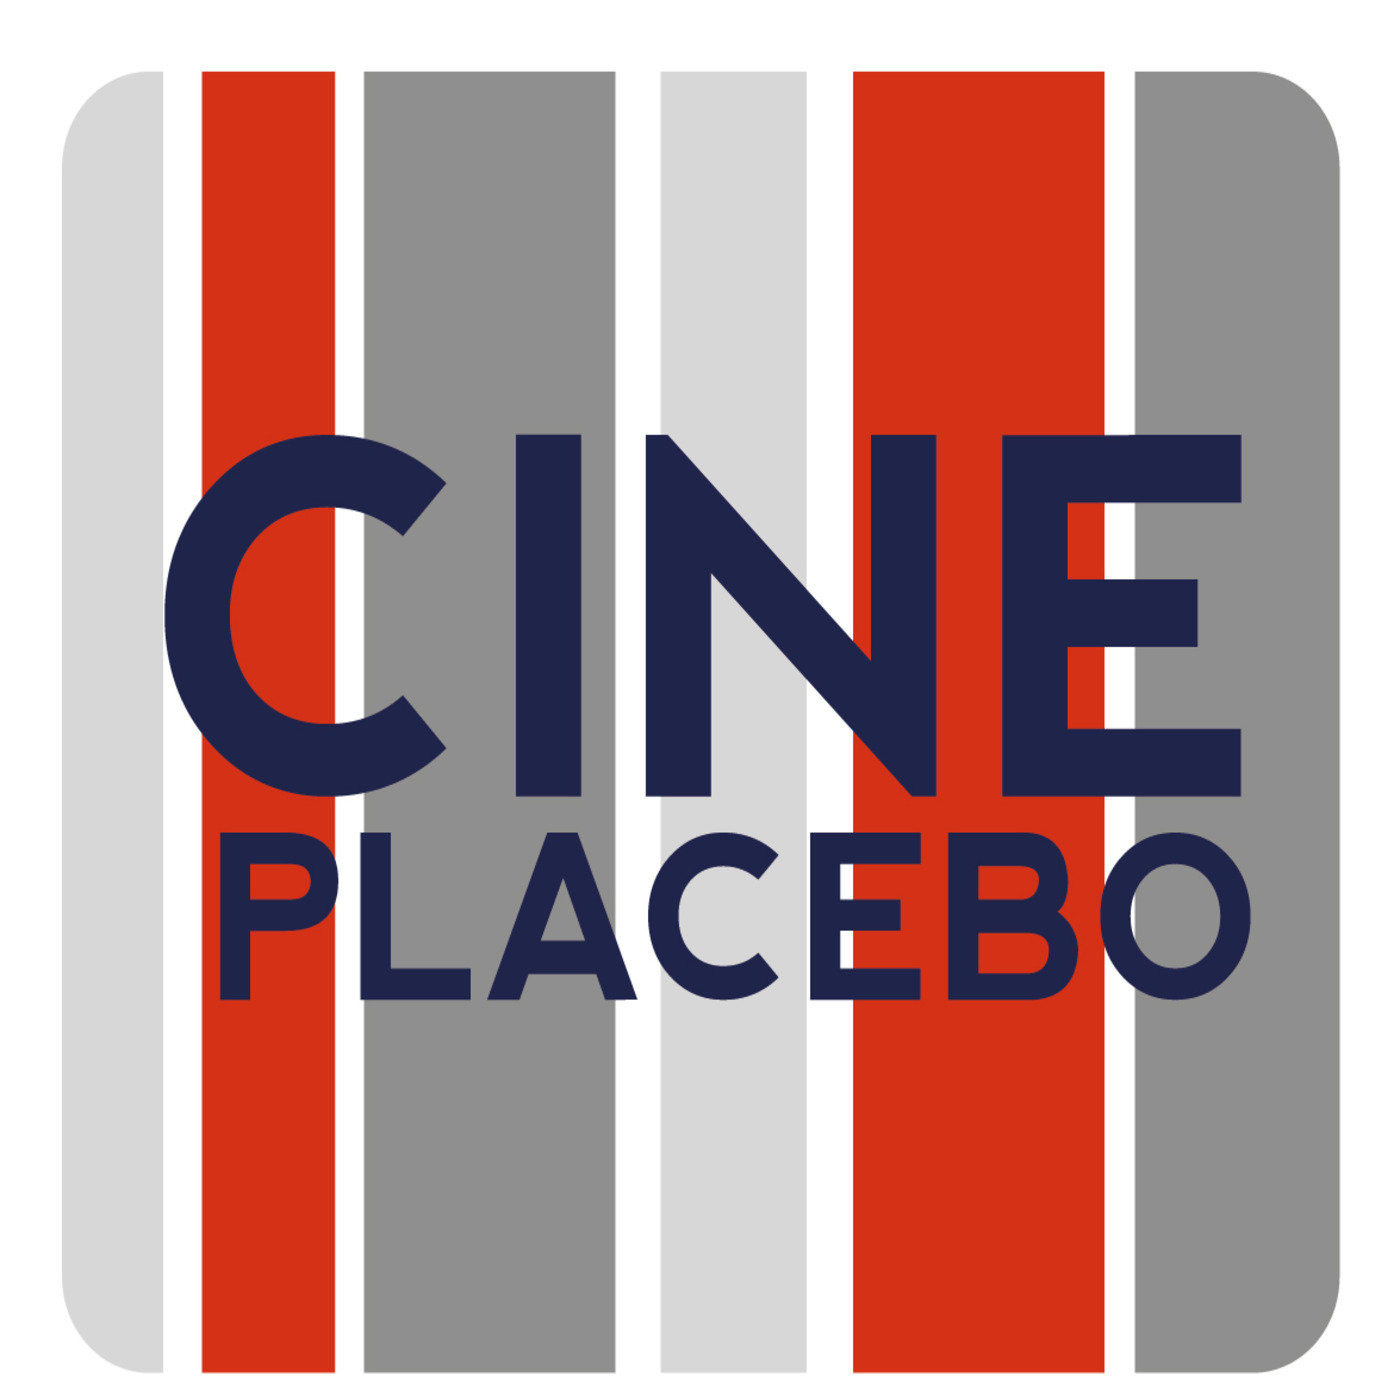 CinePlacebo